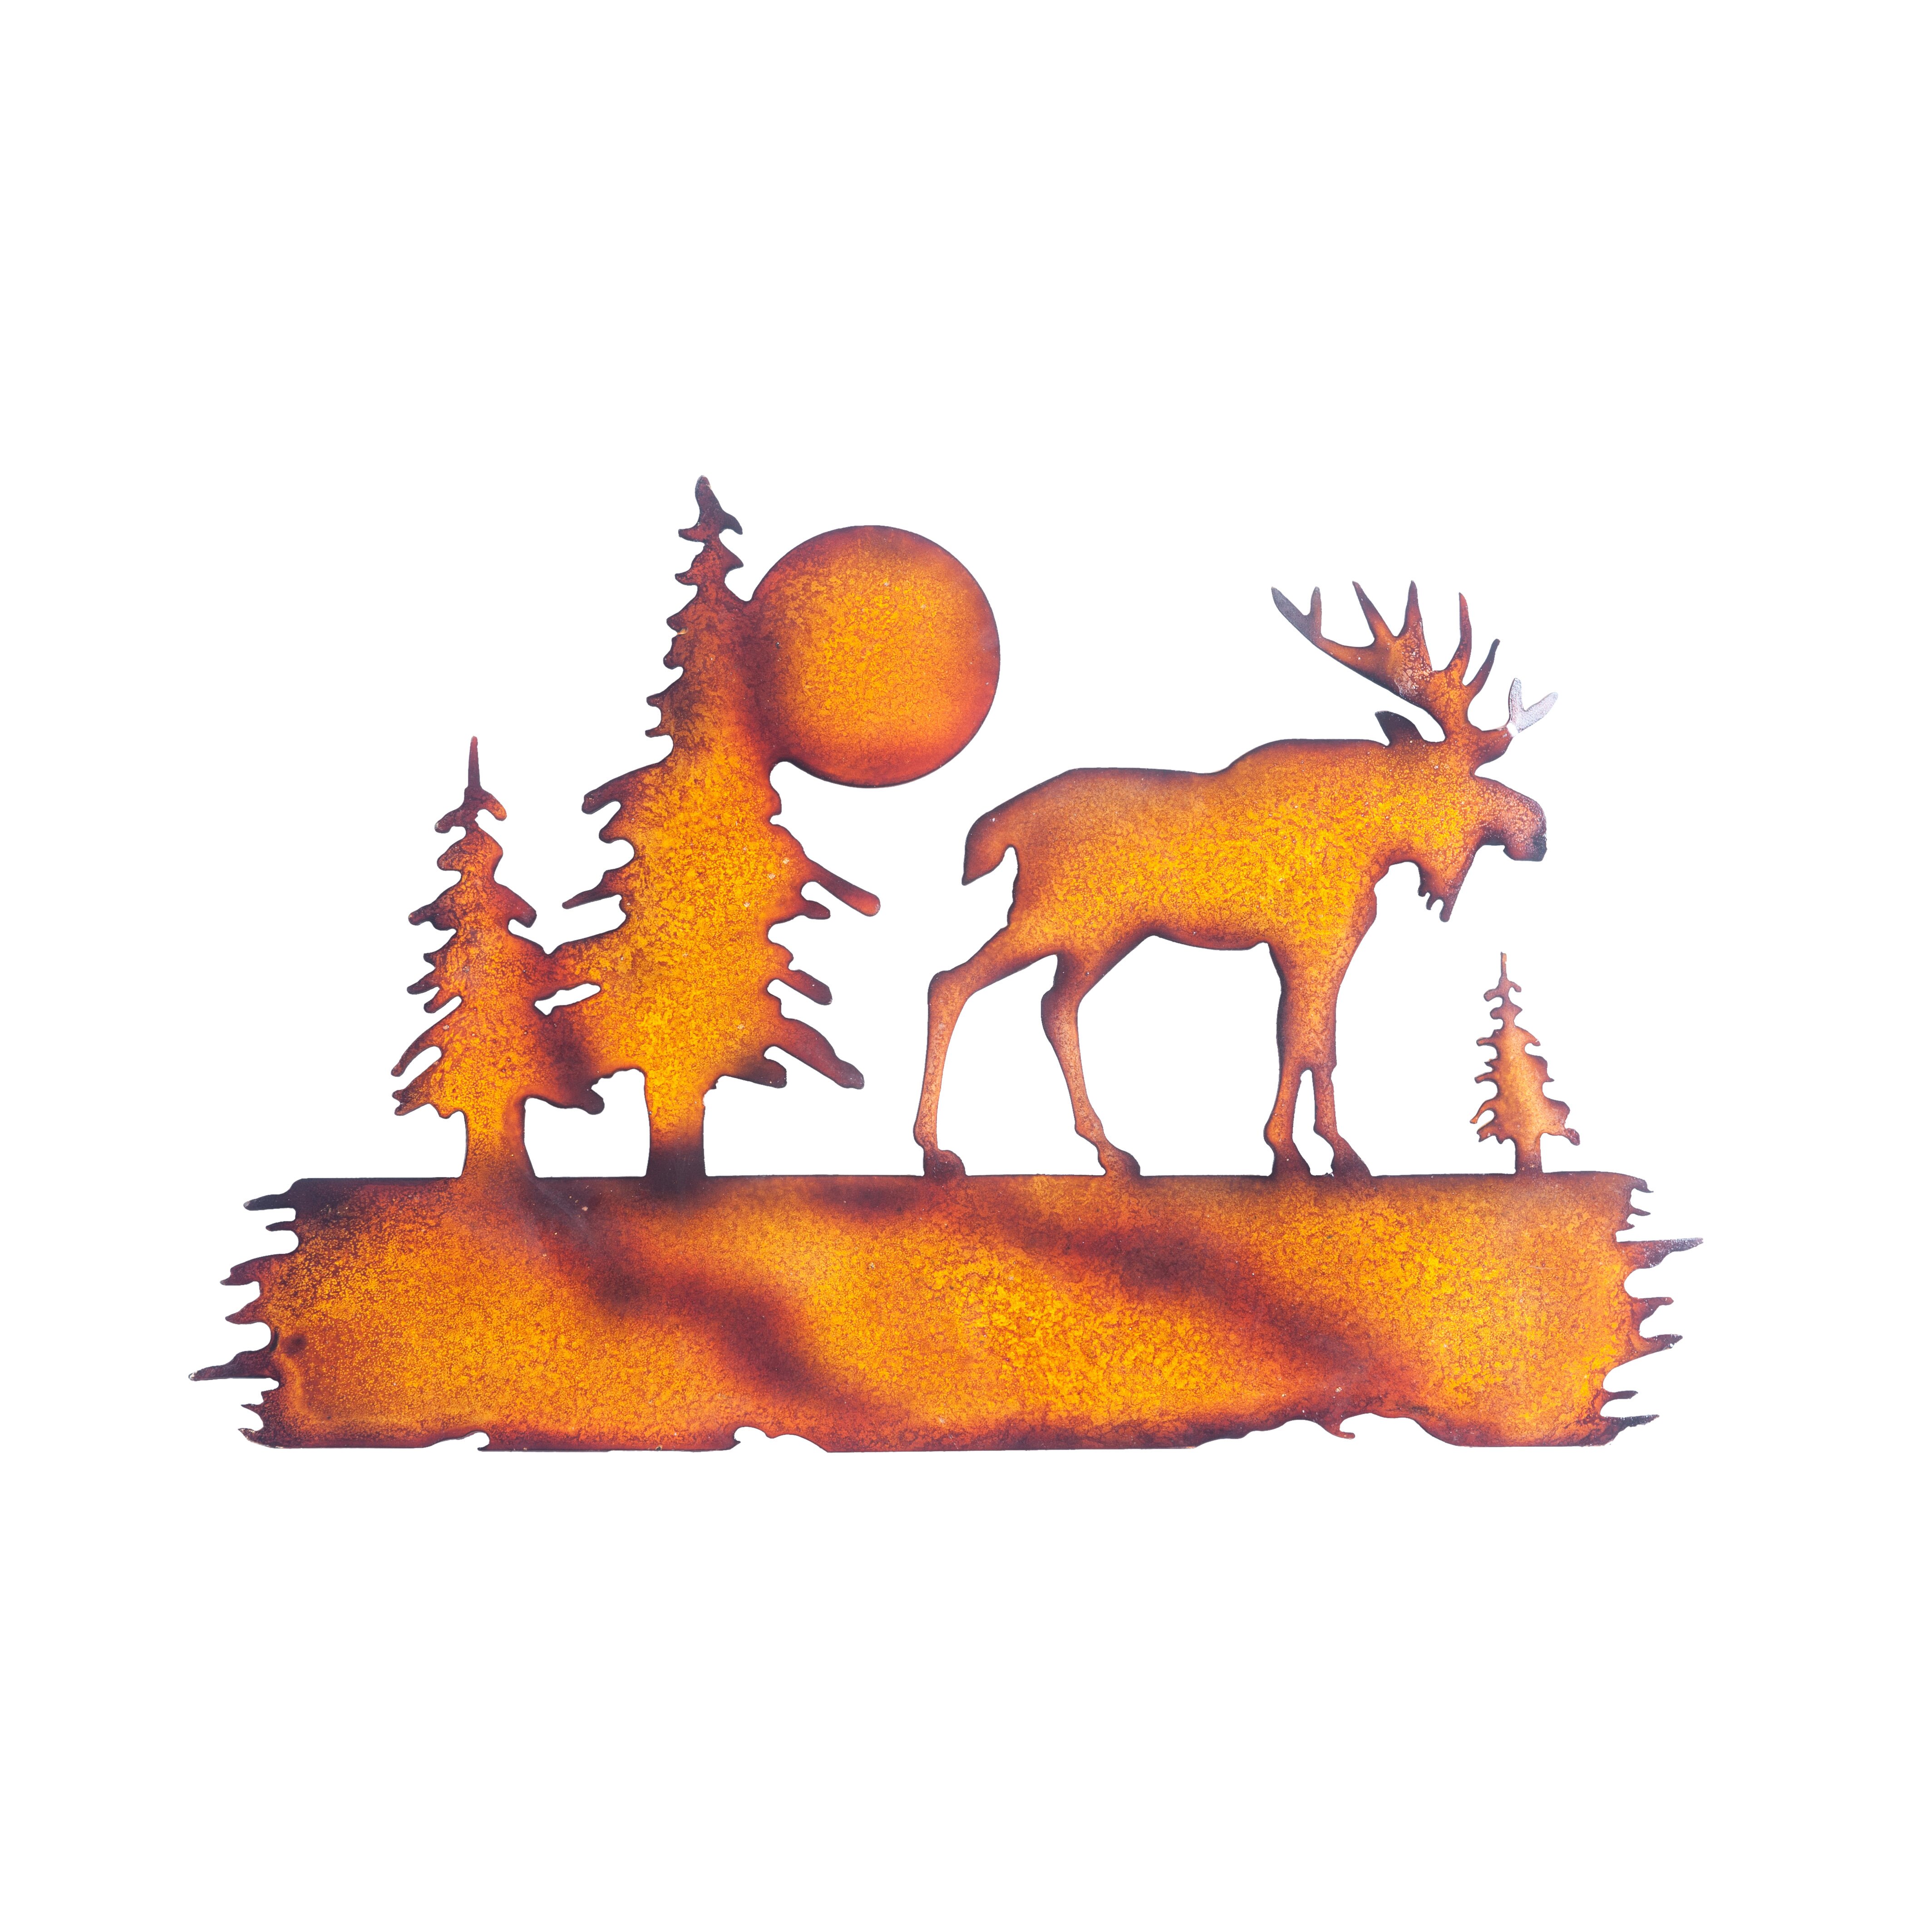 Rusty moose eu. Rusty Moose |eu small| карта. Rust Moose.